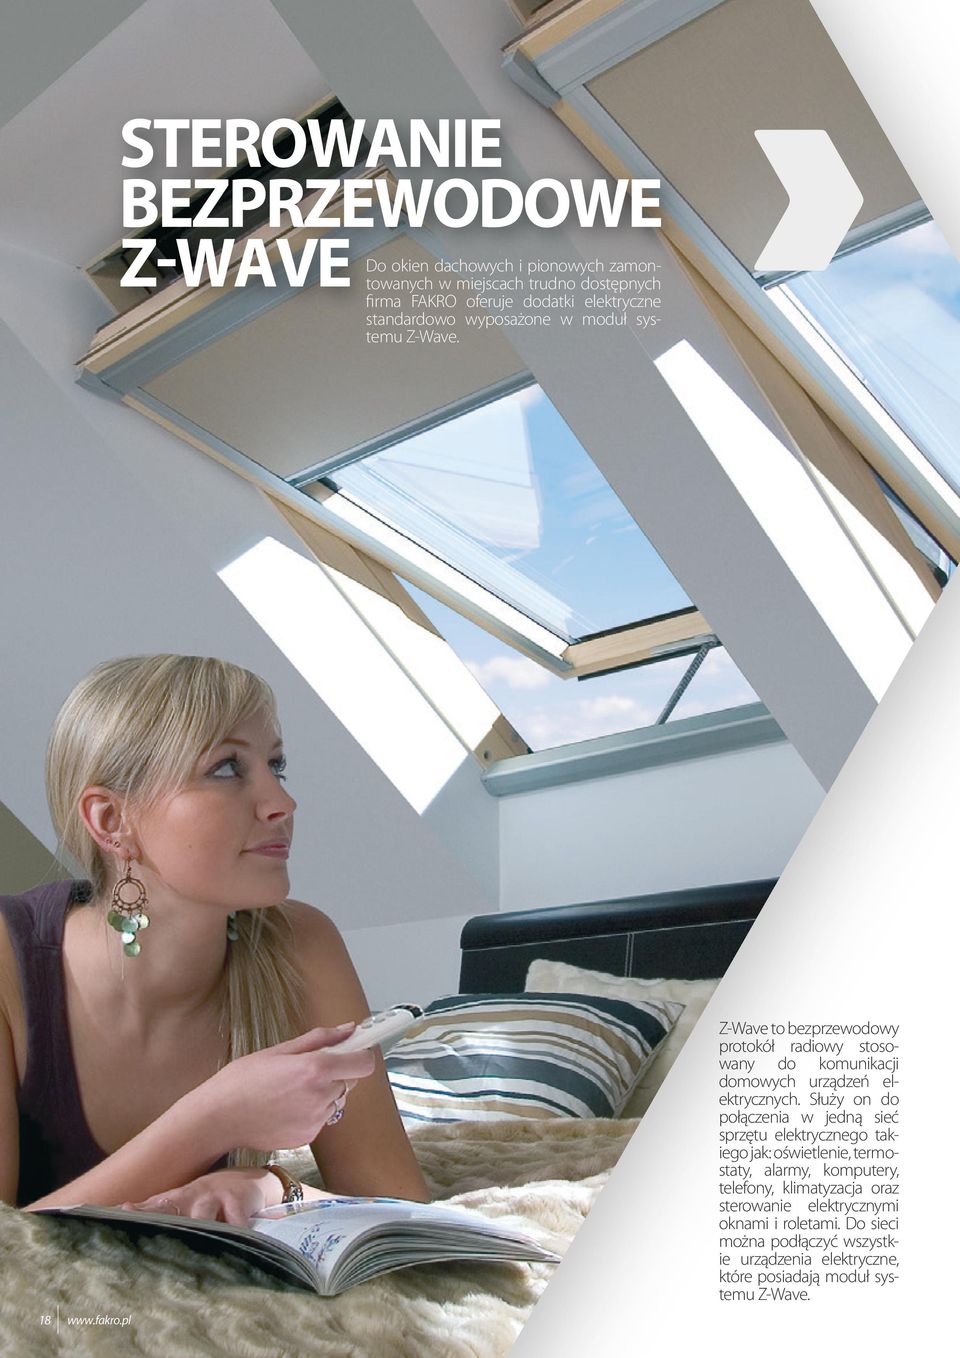 pl Z-Wave to bezprzewodowy protokół radiowy stosowany do komunikacji domowych urządzeń elektrycznych.